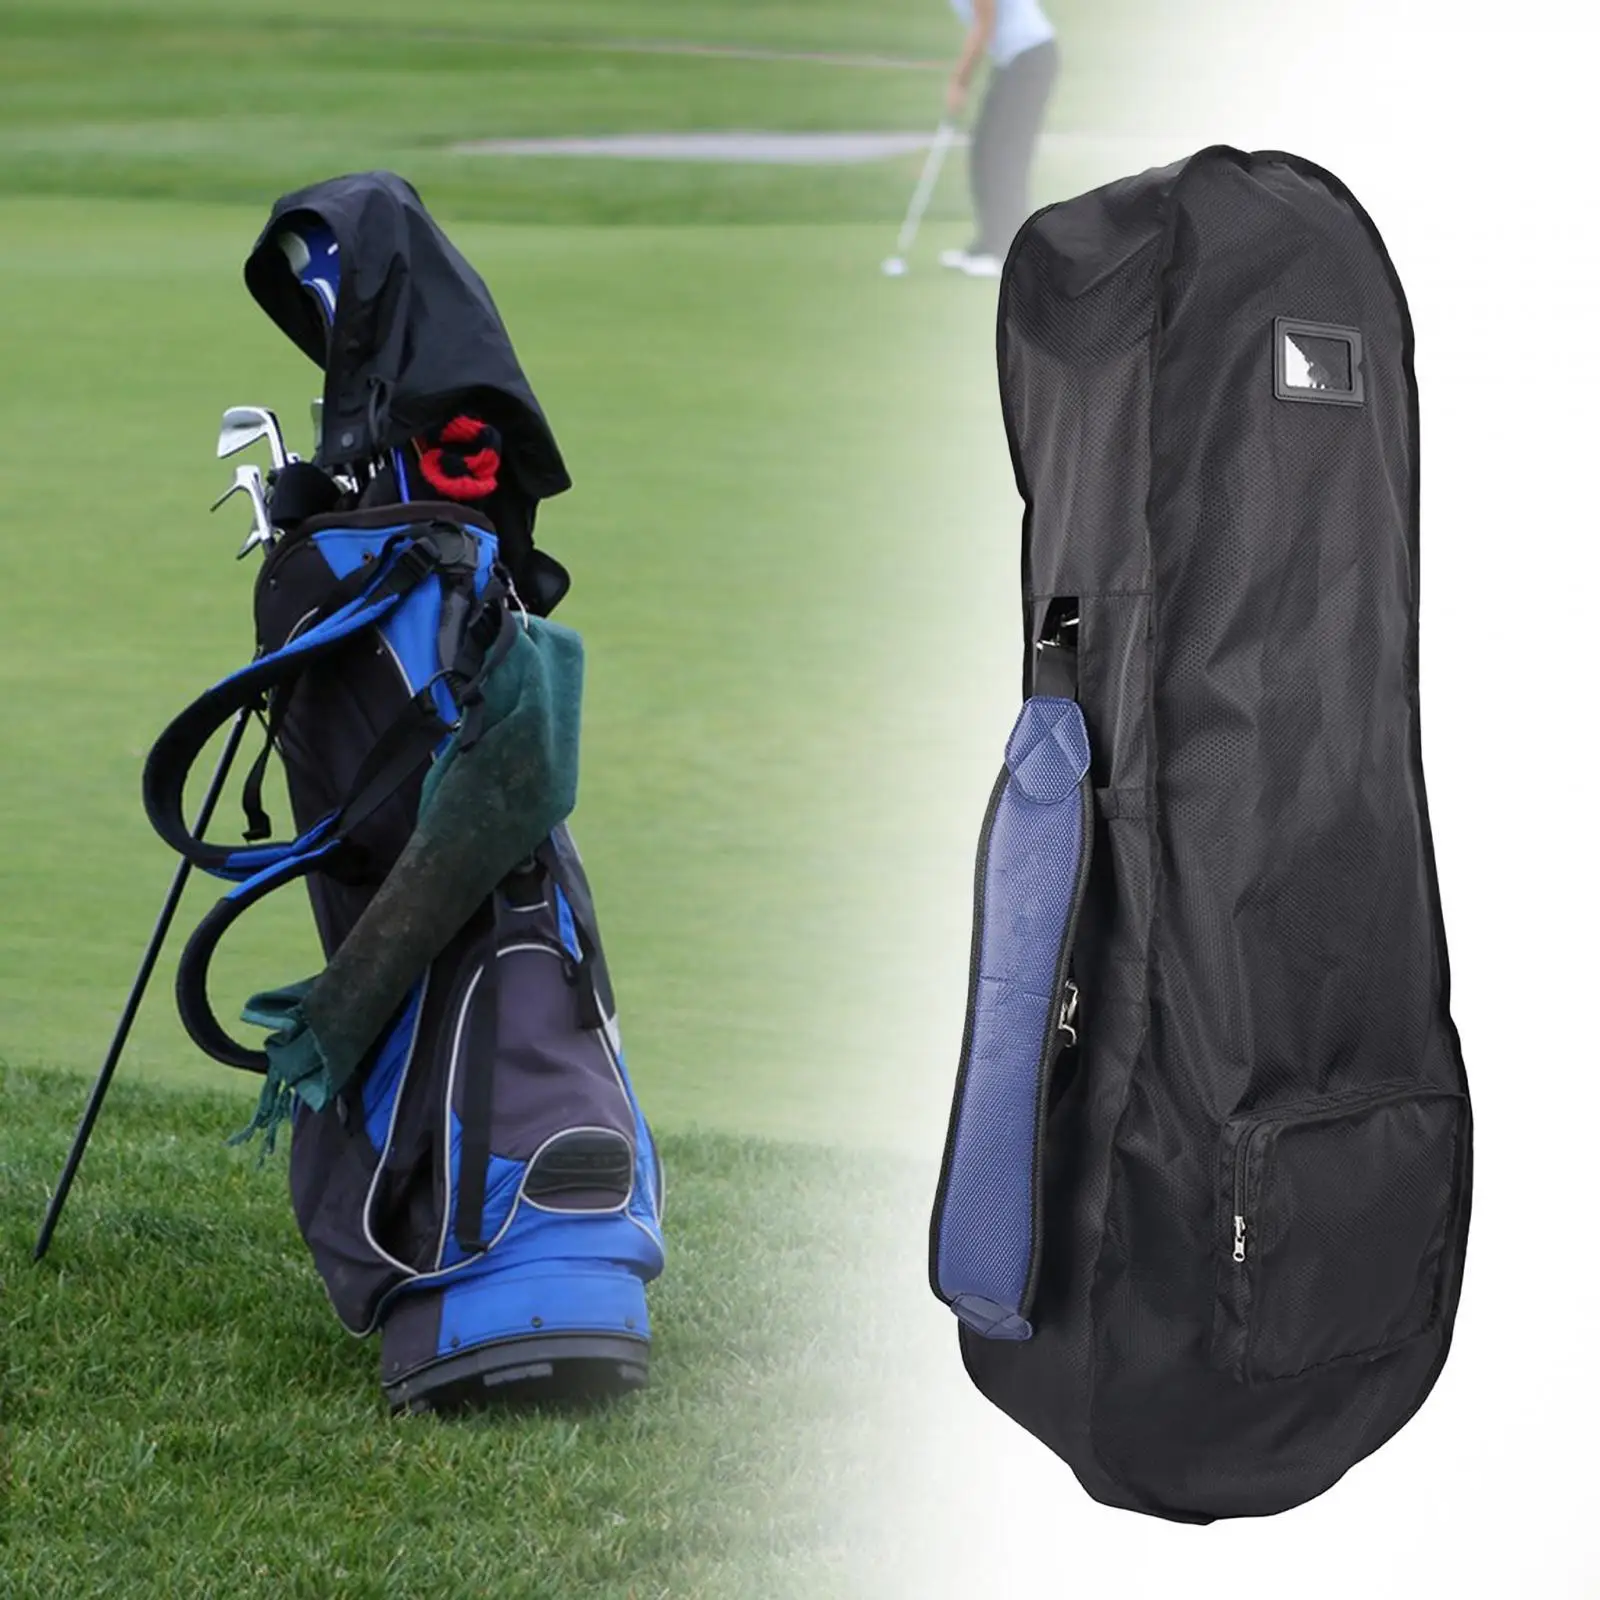 

Сумка для гольфа, чехол от дождя, сумка для переноски, водонепроницаемая Портативная сумка для гольфа, дождевик, дождевик, капюшон, защитные сумки для гольфа, сумка для гольфа, Дорожный Чехол